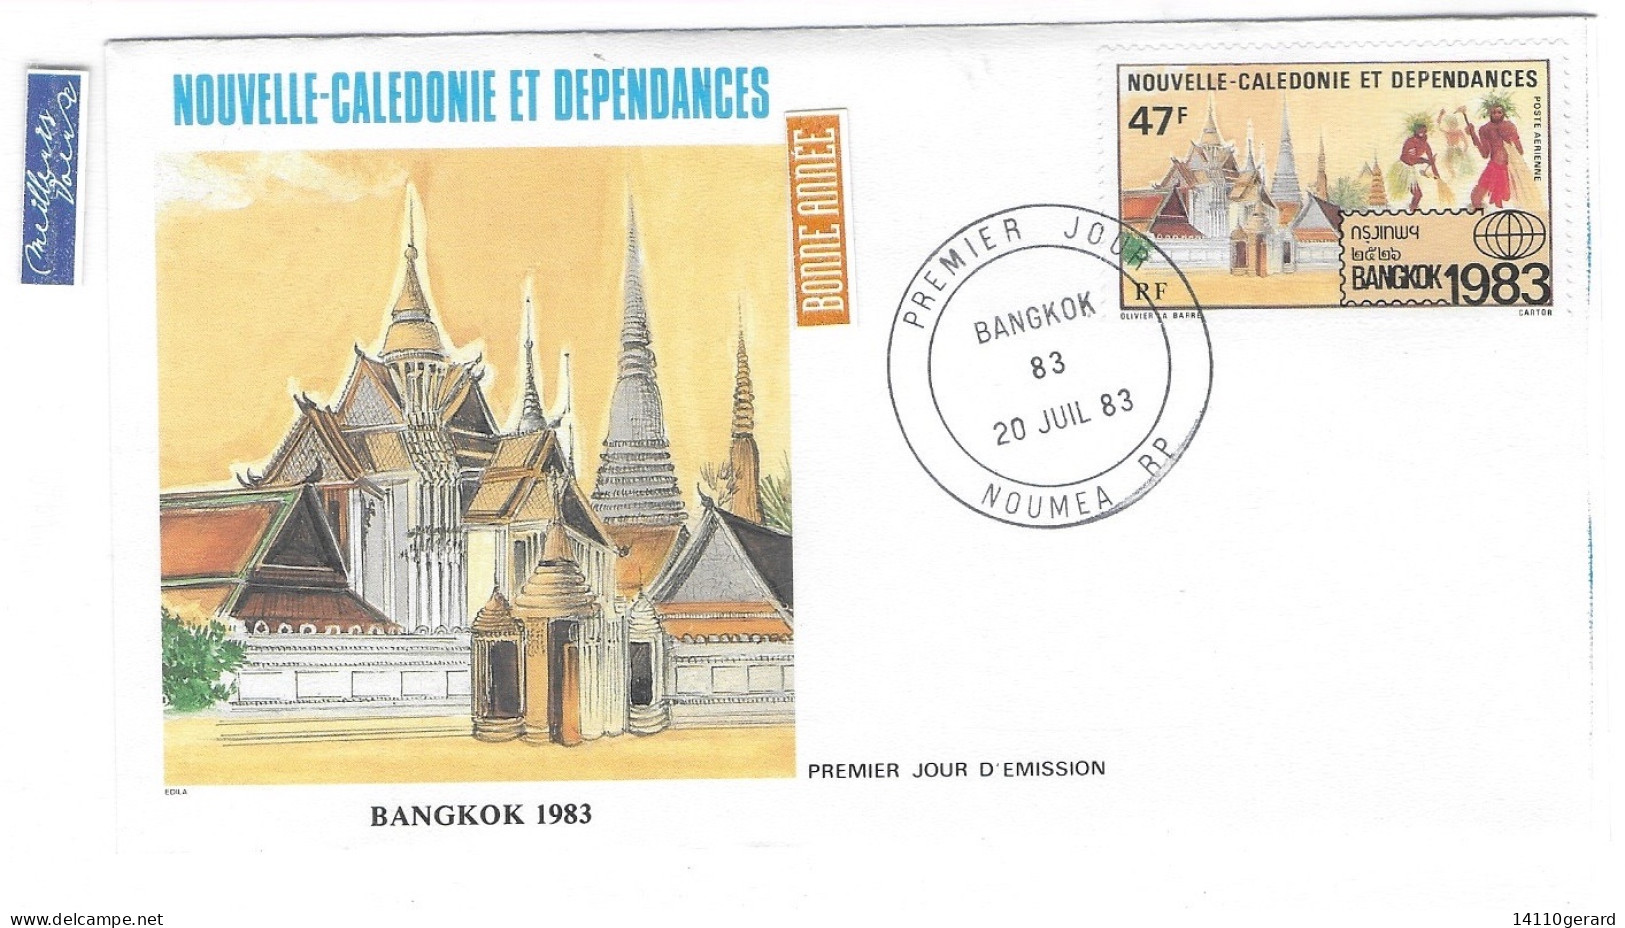 NOUVELLE-CALÉDONIE ET DÉPENDANCES BANGKOK 1983 20 JUILLET 1983 - Lettres & Documents